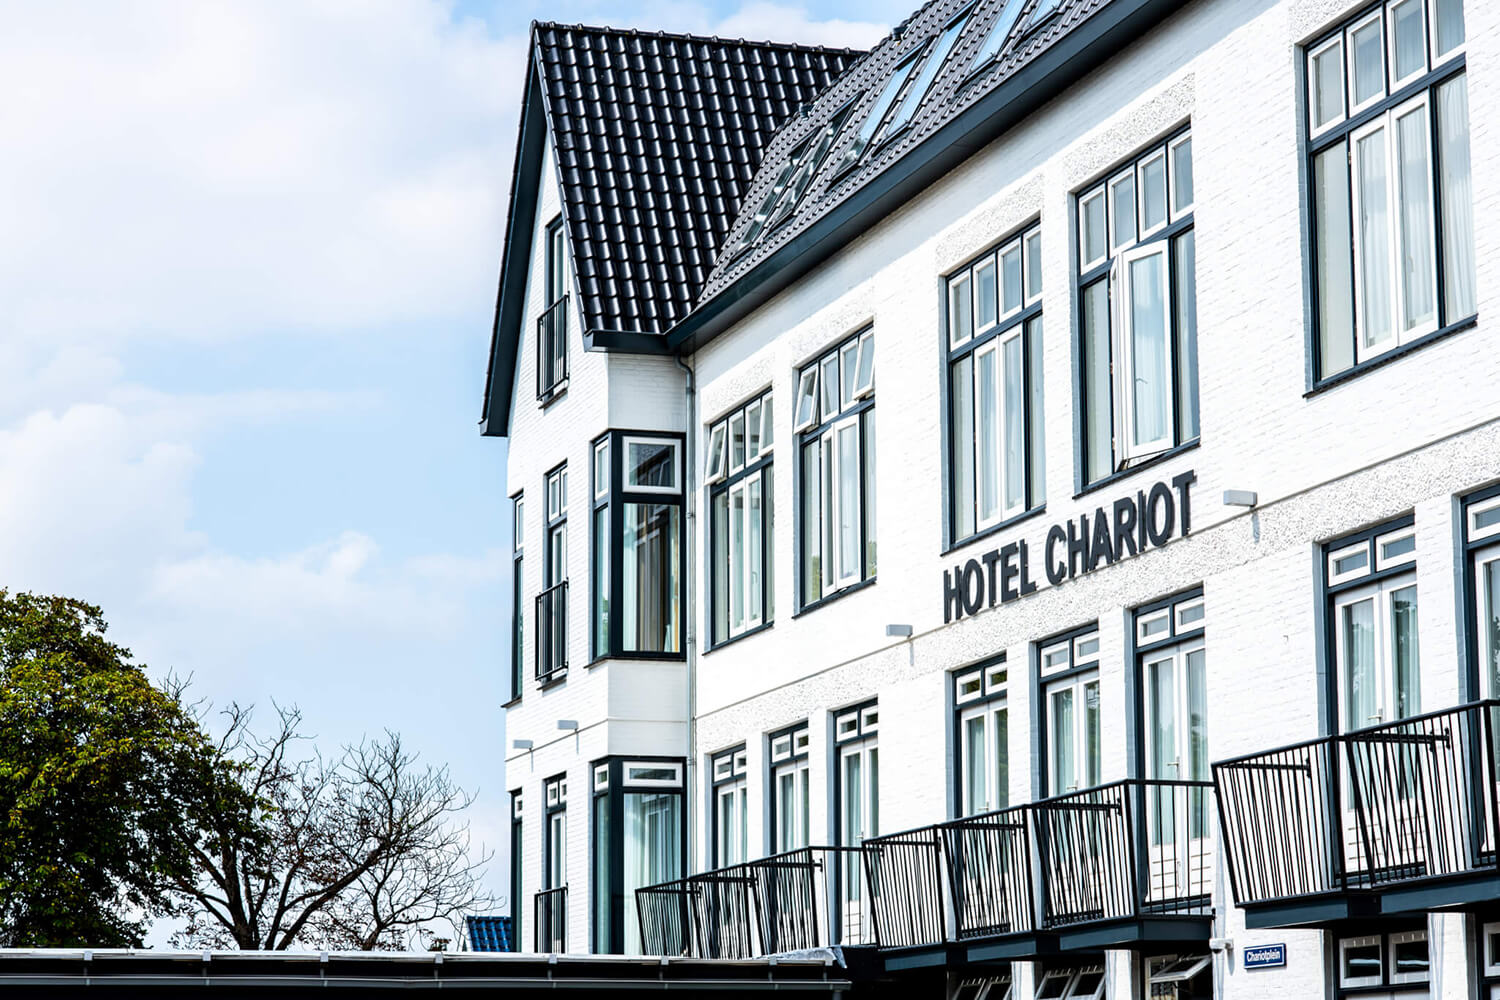 Hotel Chariot Aalsmeer